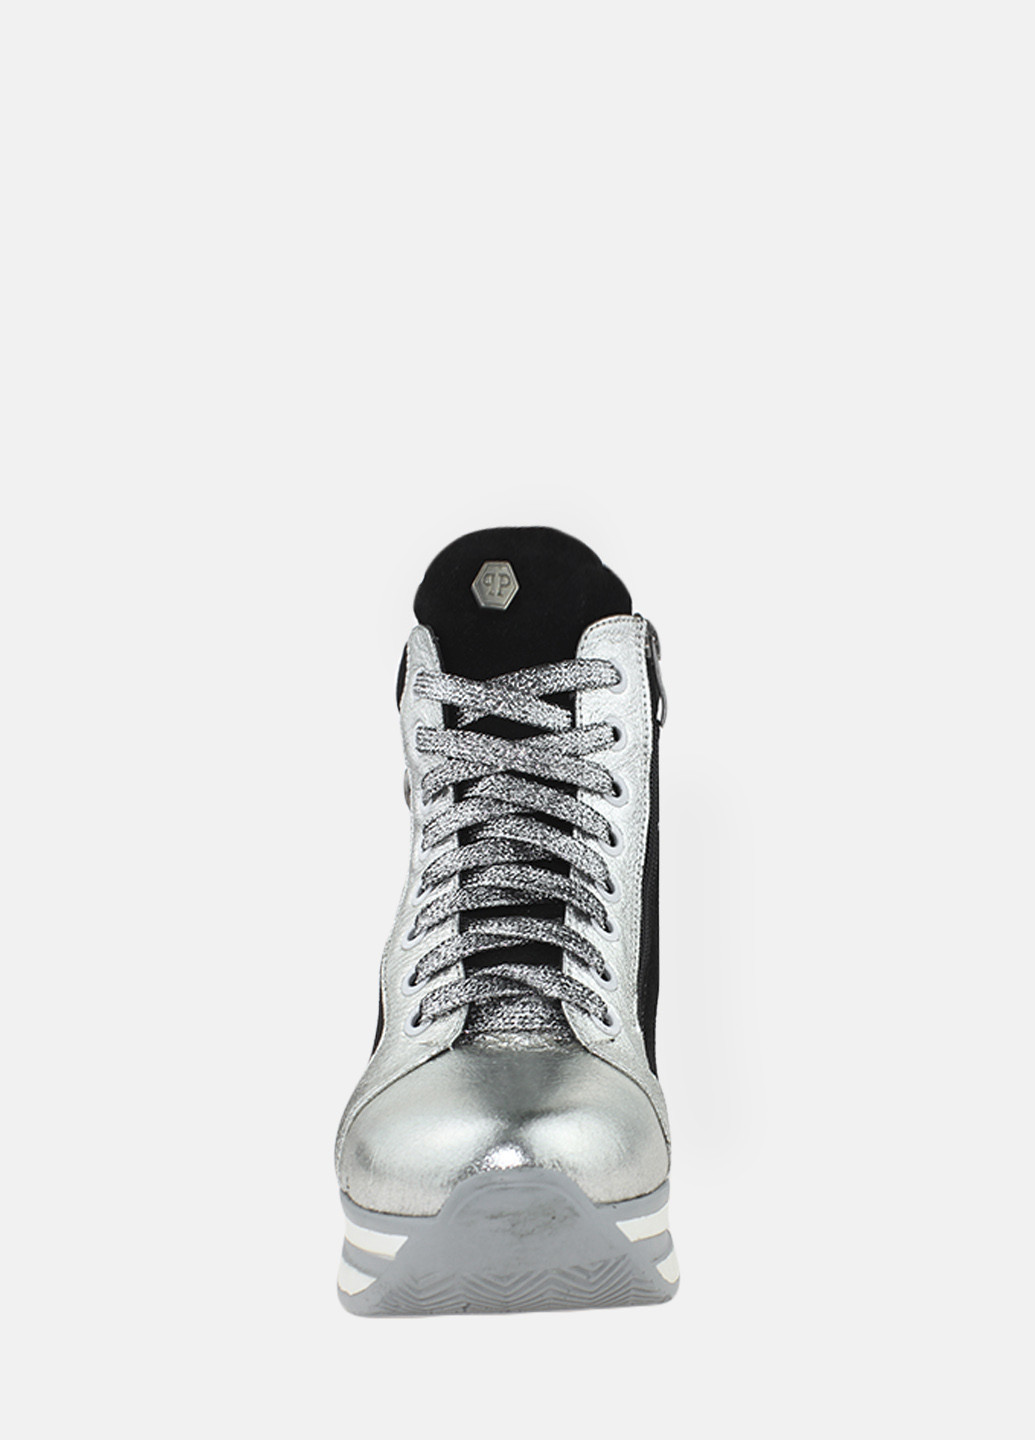 Зимние ботинки ry500-1 серебро-черный Yta из натуральной замши